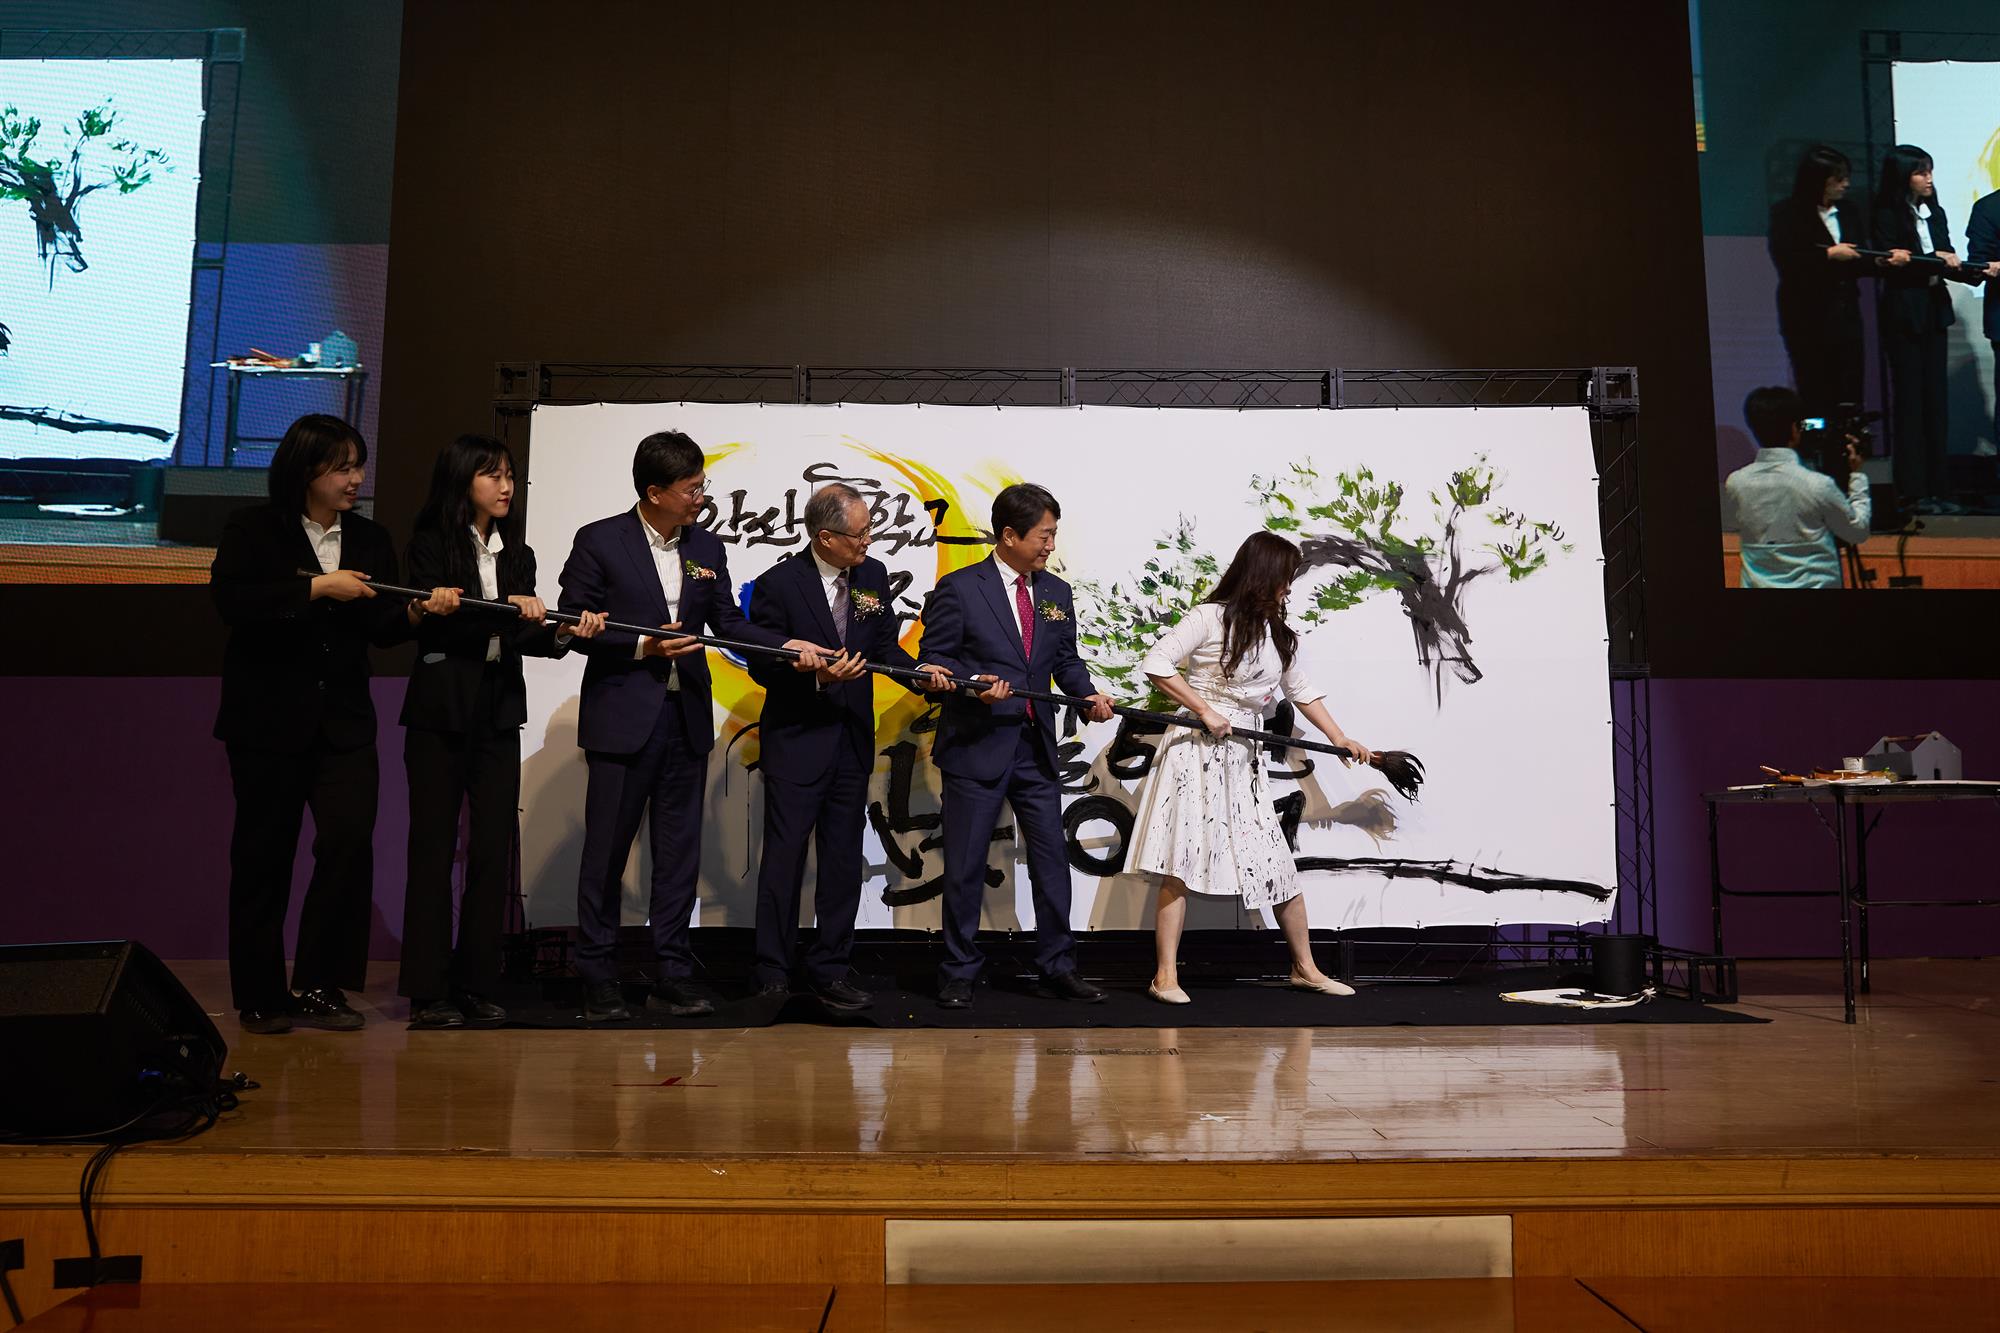 안산대학교 50주년 기념식 행사사진